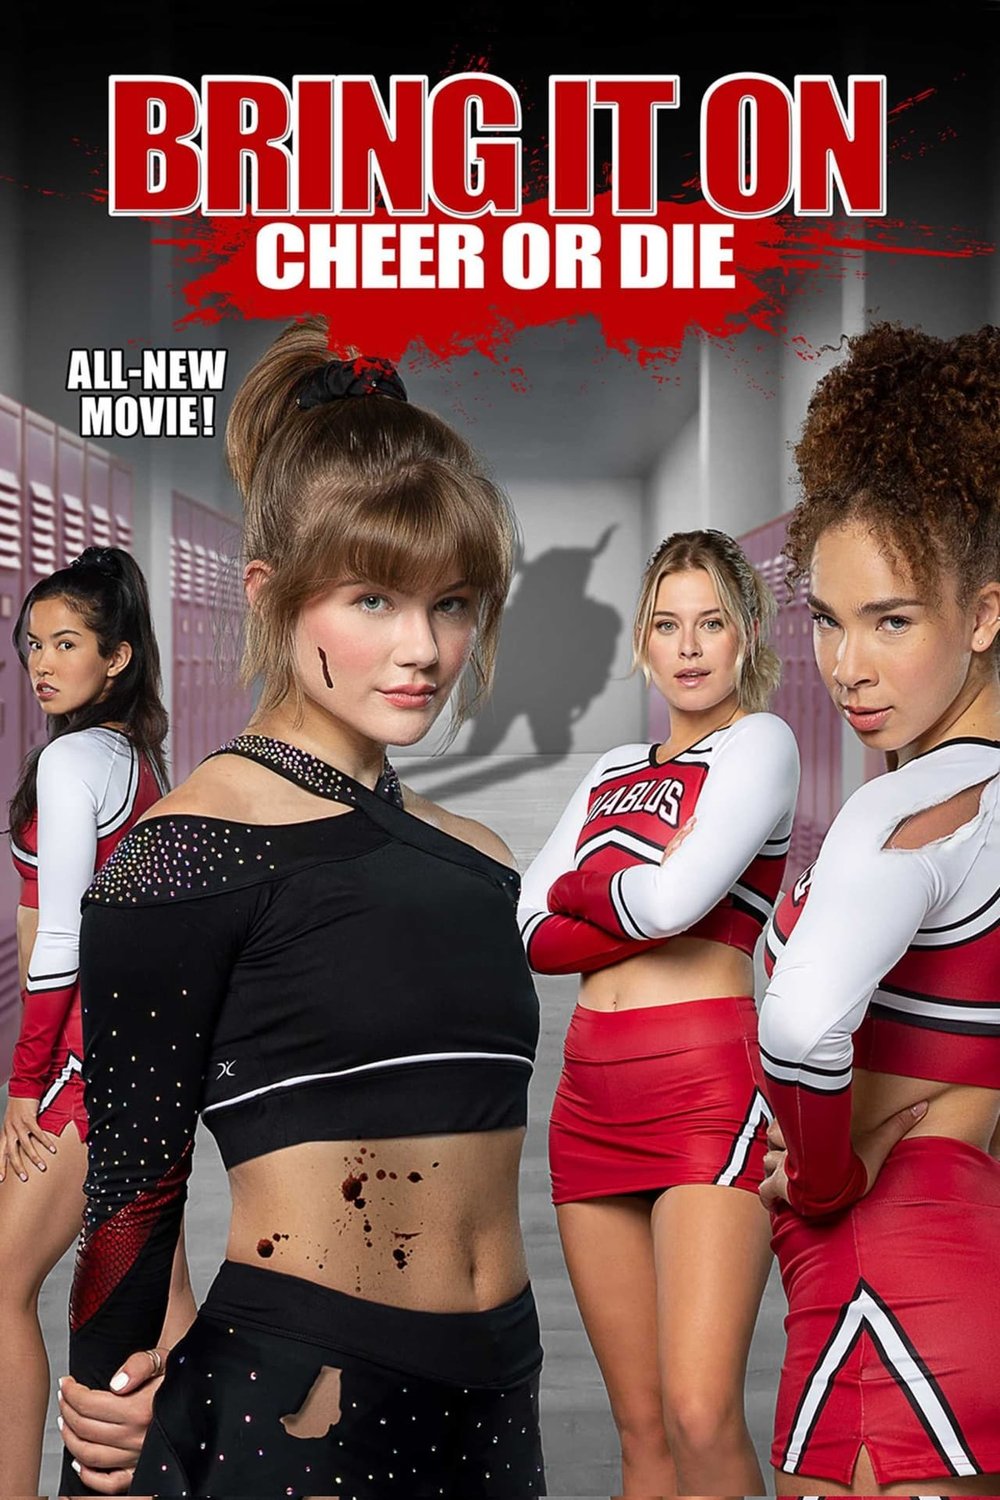 Poster of the movie Bring It On: Cheer or Die